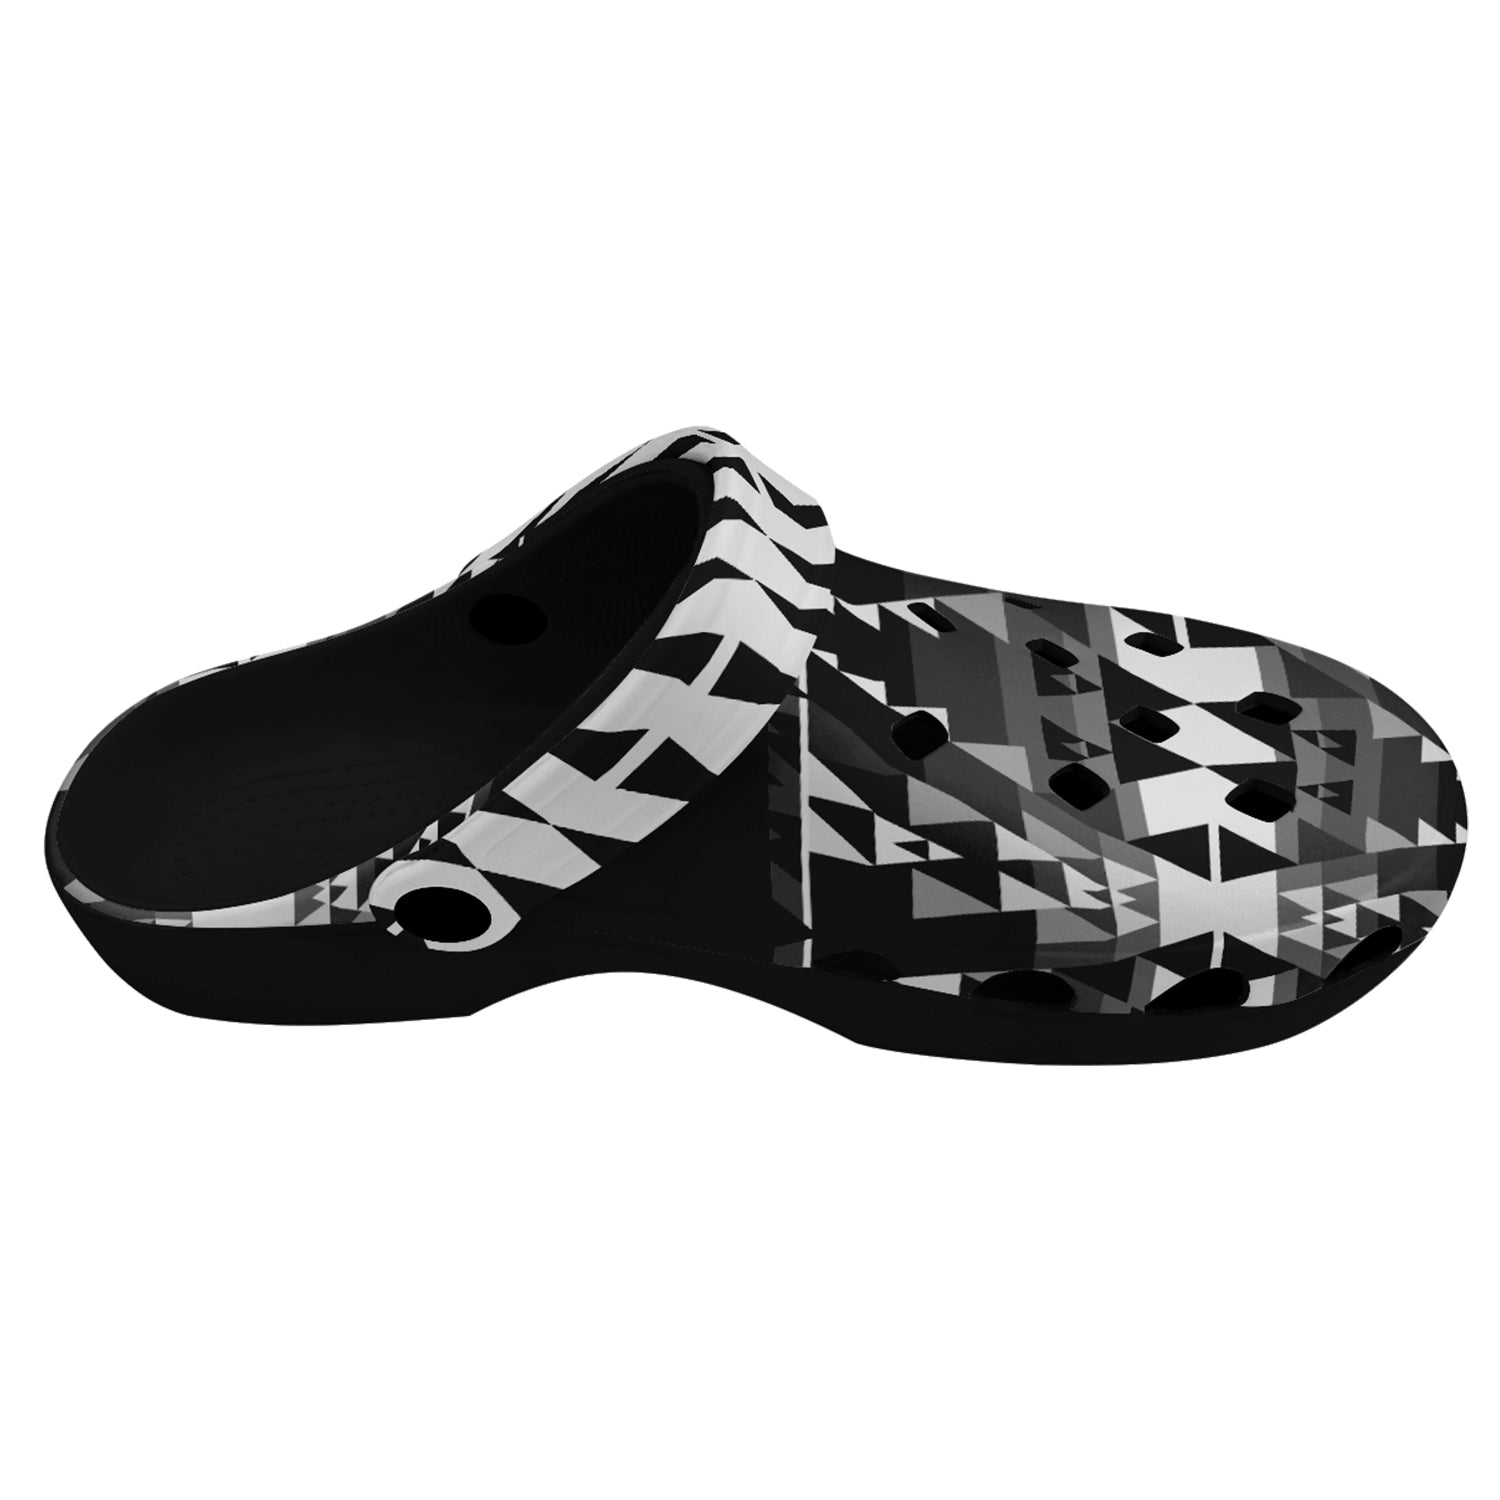 Writing on Stone Black and White Muddies Unisex Clog Shoes